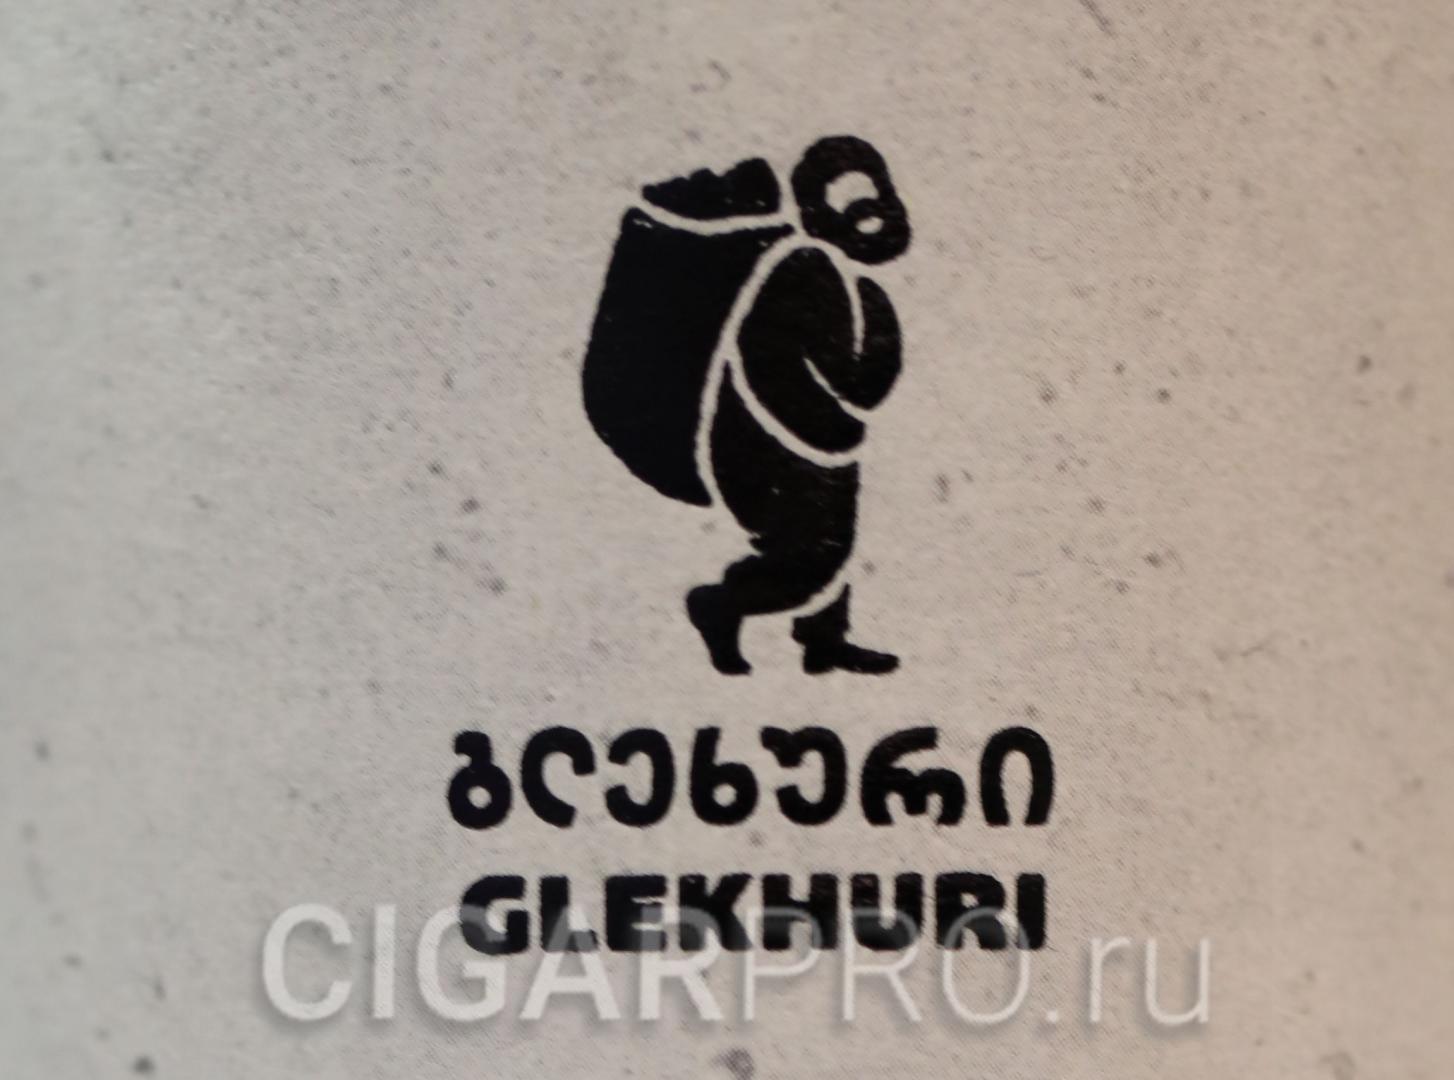 Изображения крестьянина надпись glekhuri